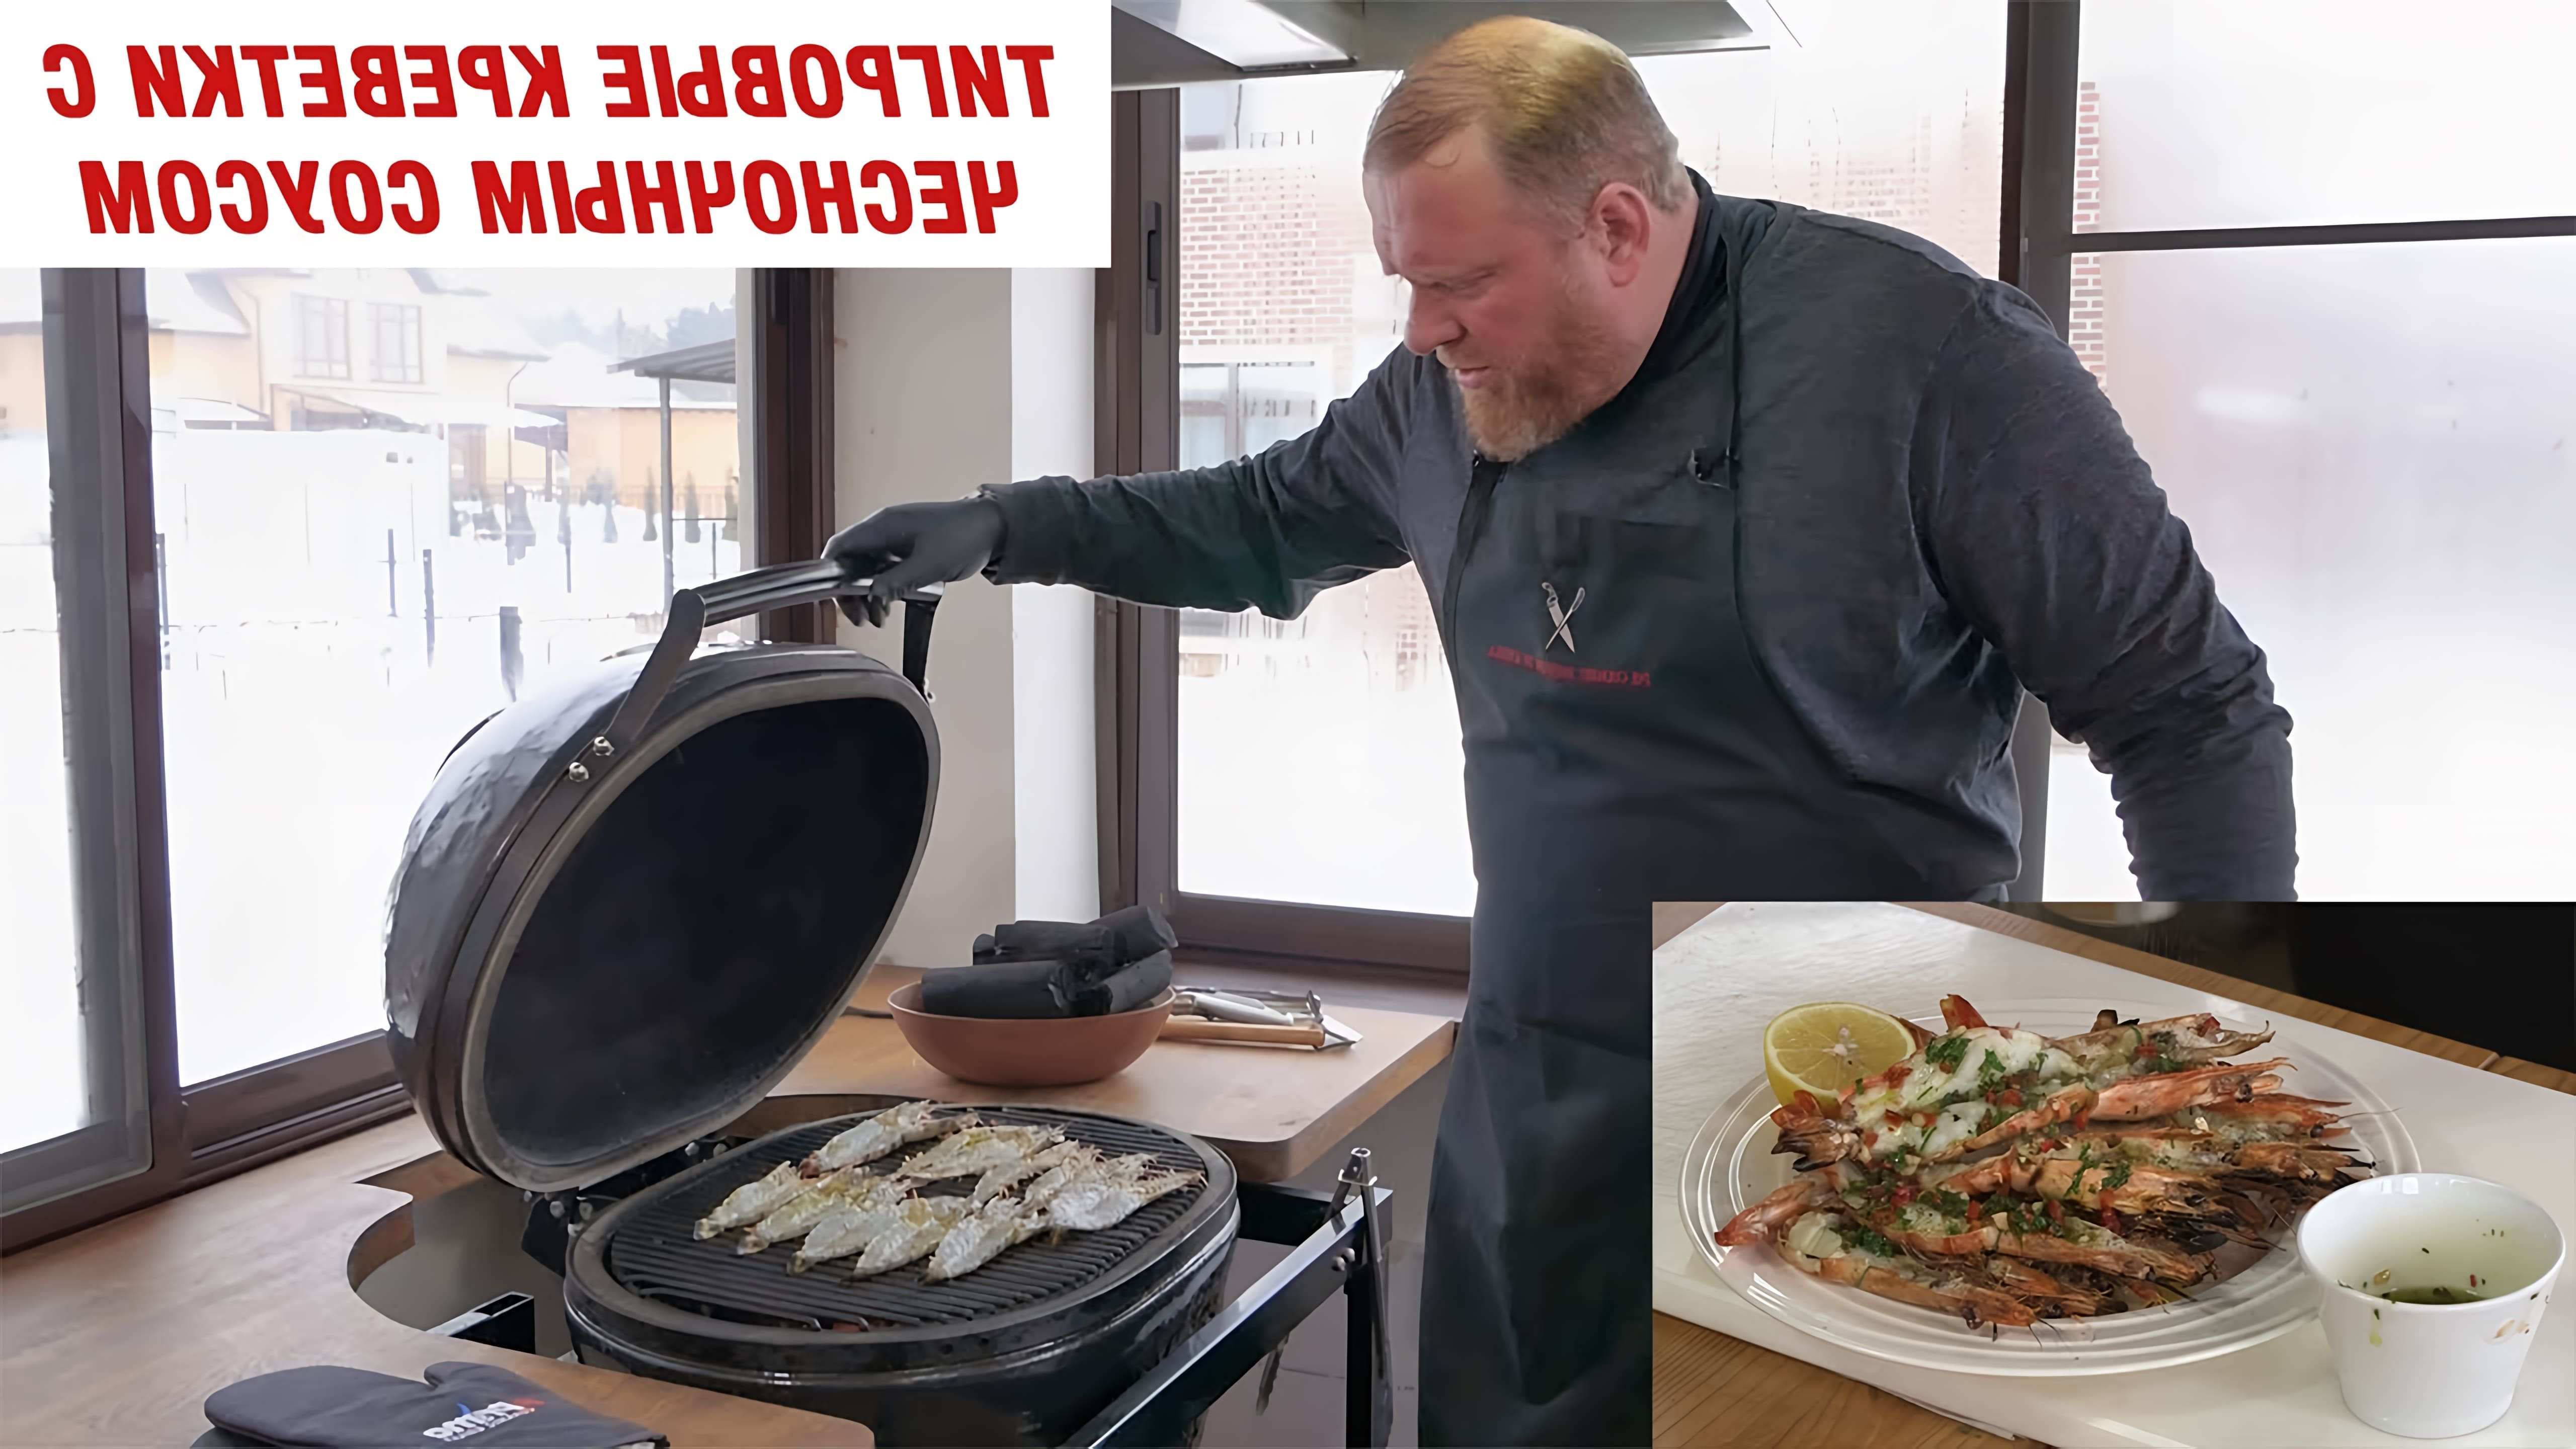 В этом видео Константин Ивлев готовит тигровые креветки с чесночным маслом на керамическом гриле Primo